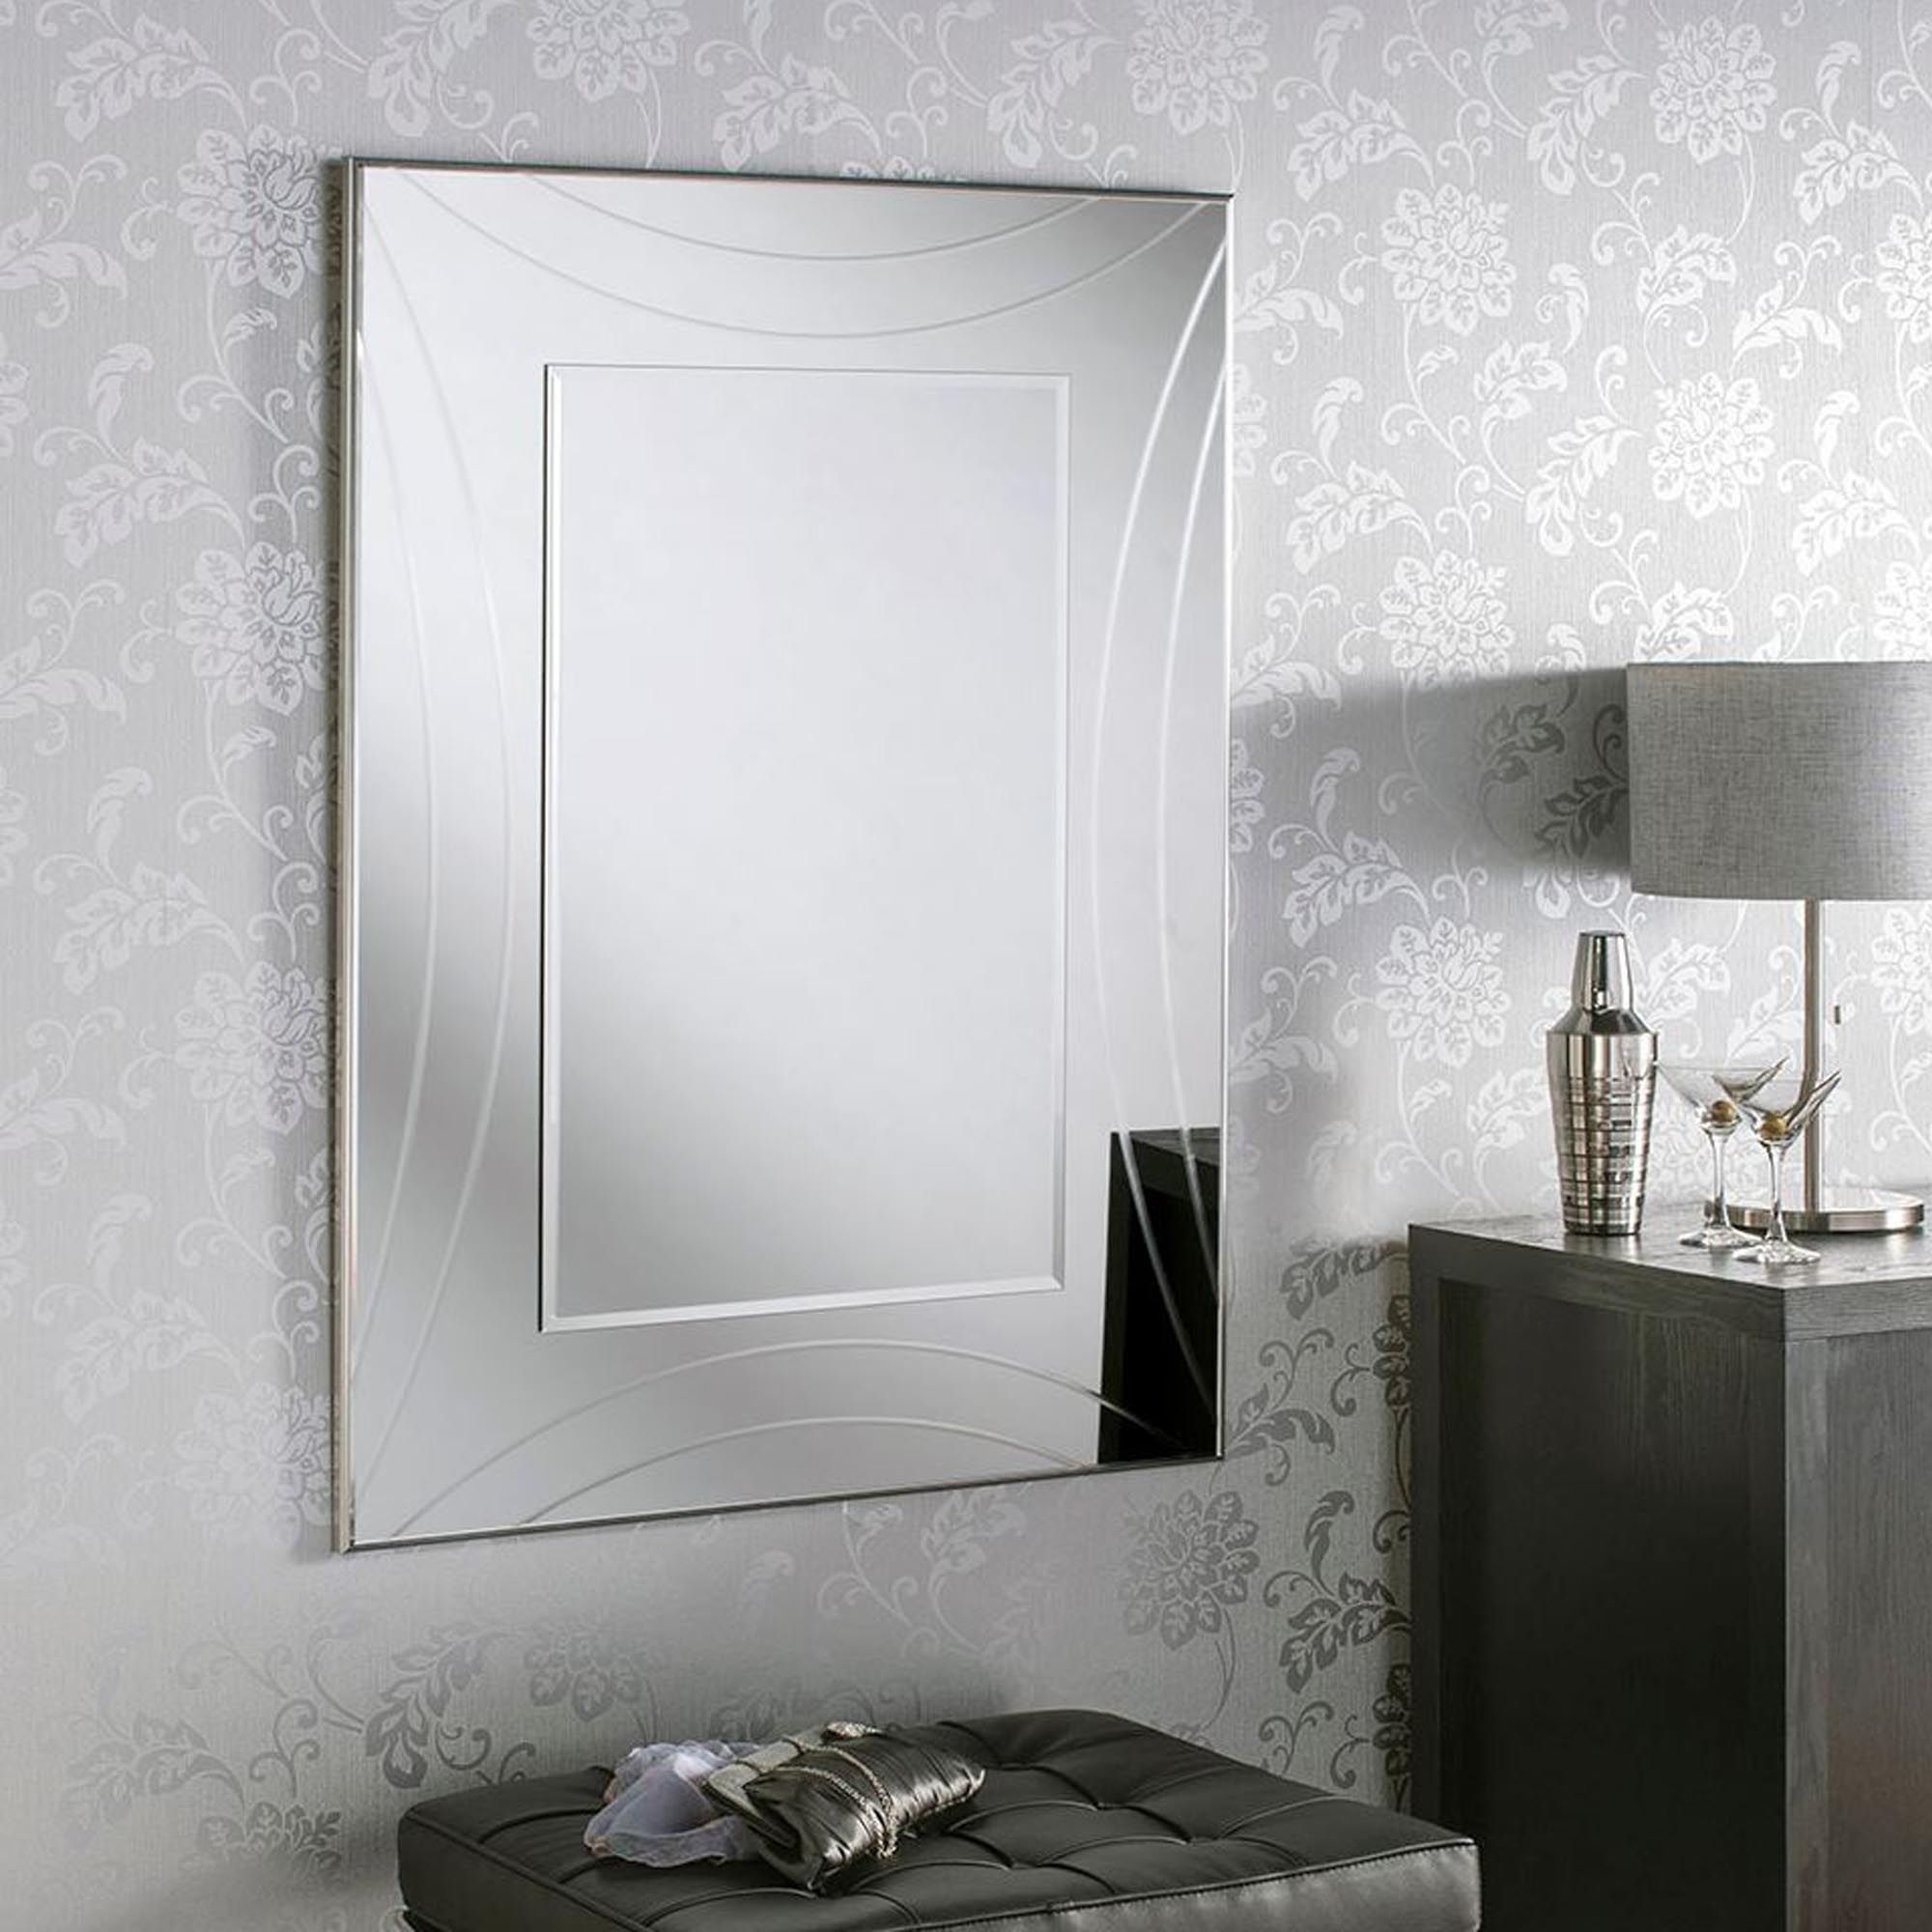 Contemporary Silver Rectangular Wall Mirror | Homesdirect365 For Rectangular Grid Wall Mirrors (View 5 of 15)